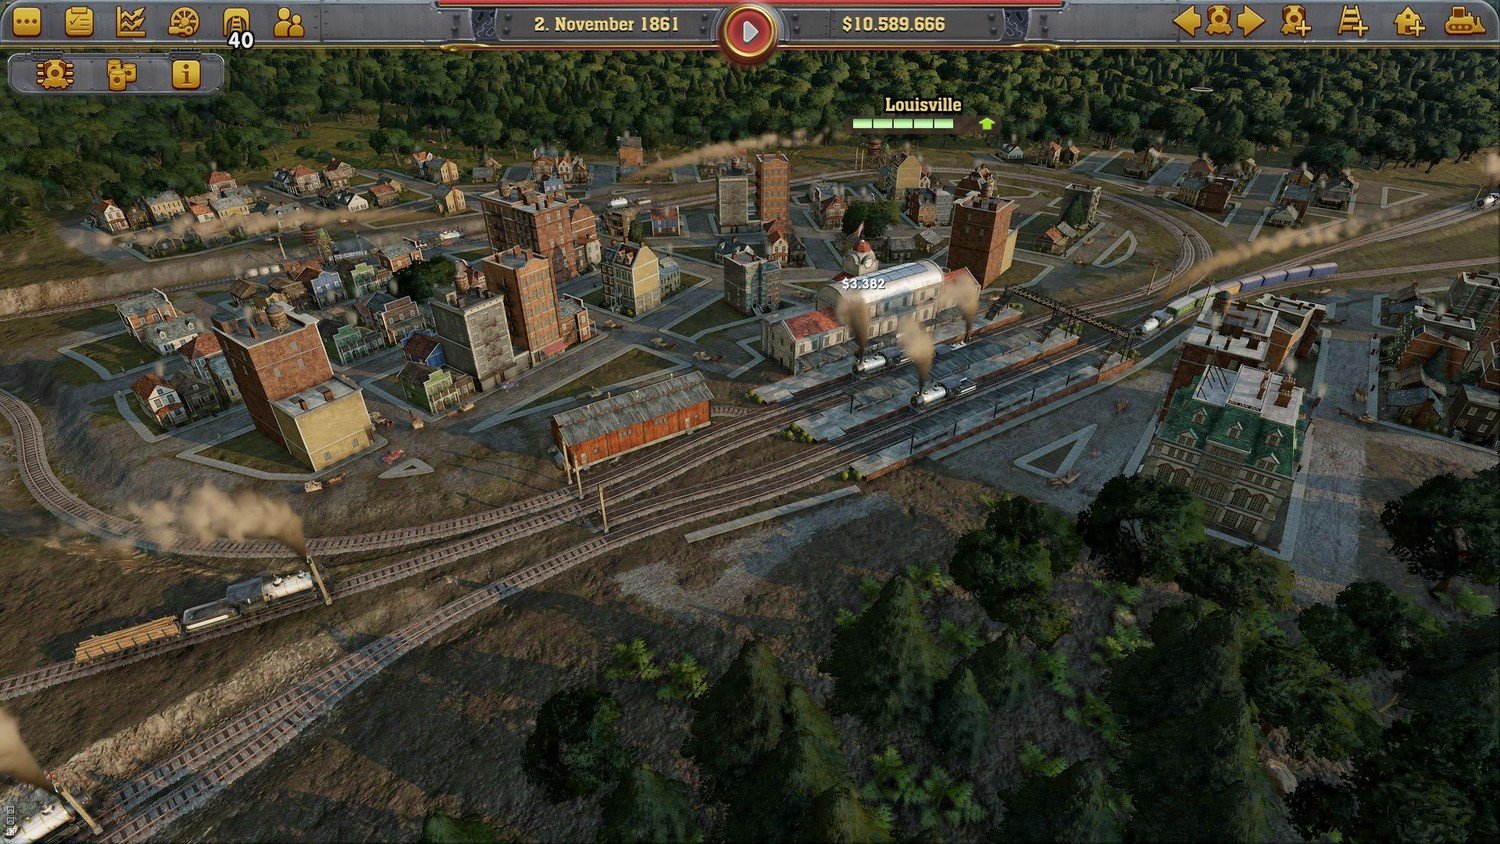 Скриншот 1 к игре Railway Empire Complete Collection v.1.14.0.27219 [GOG] (2018) скачать торрент Лицензия